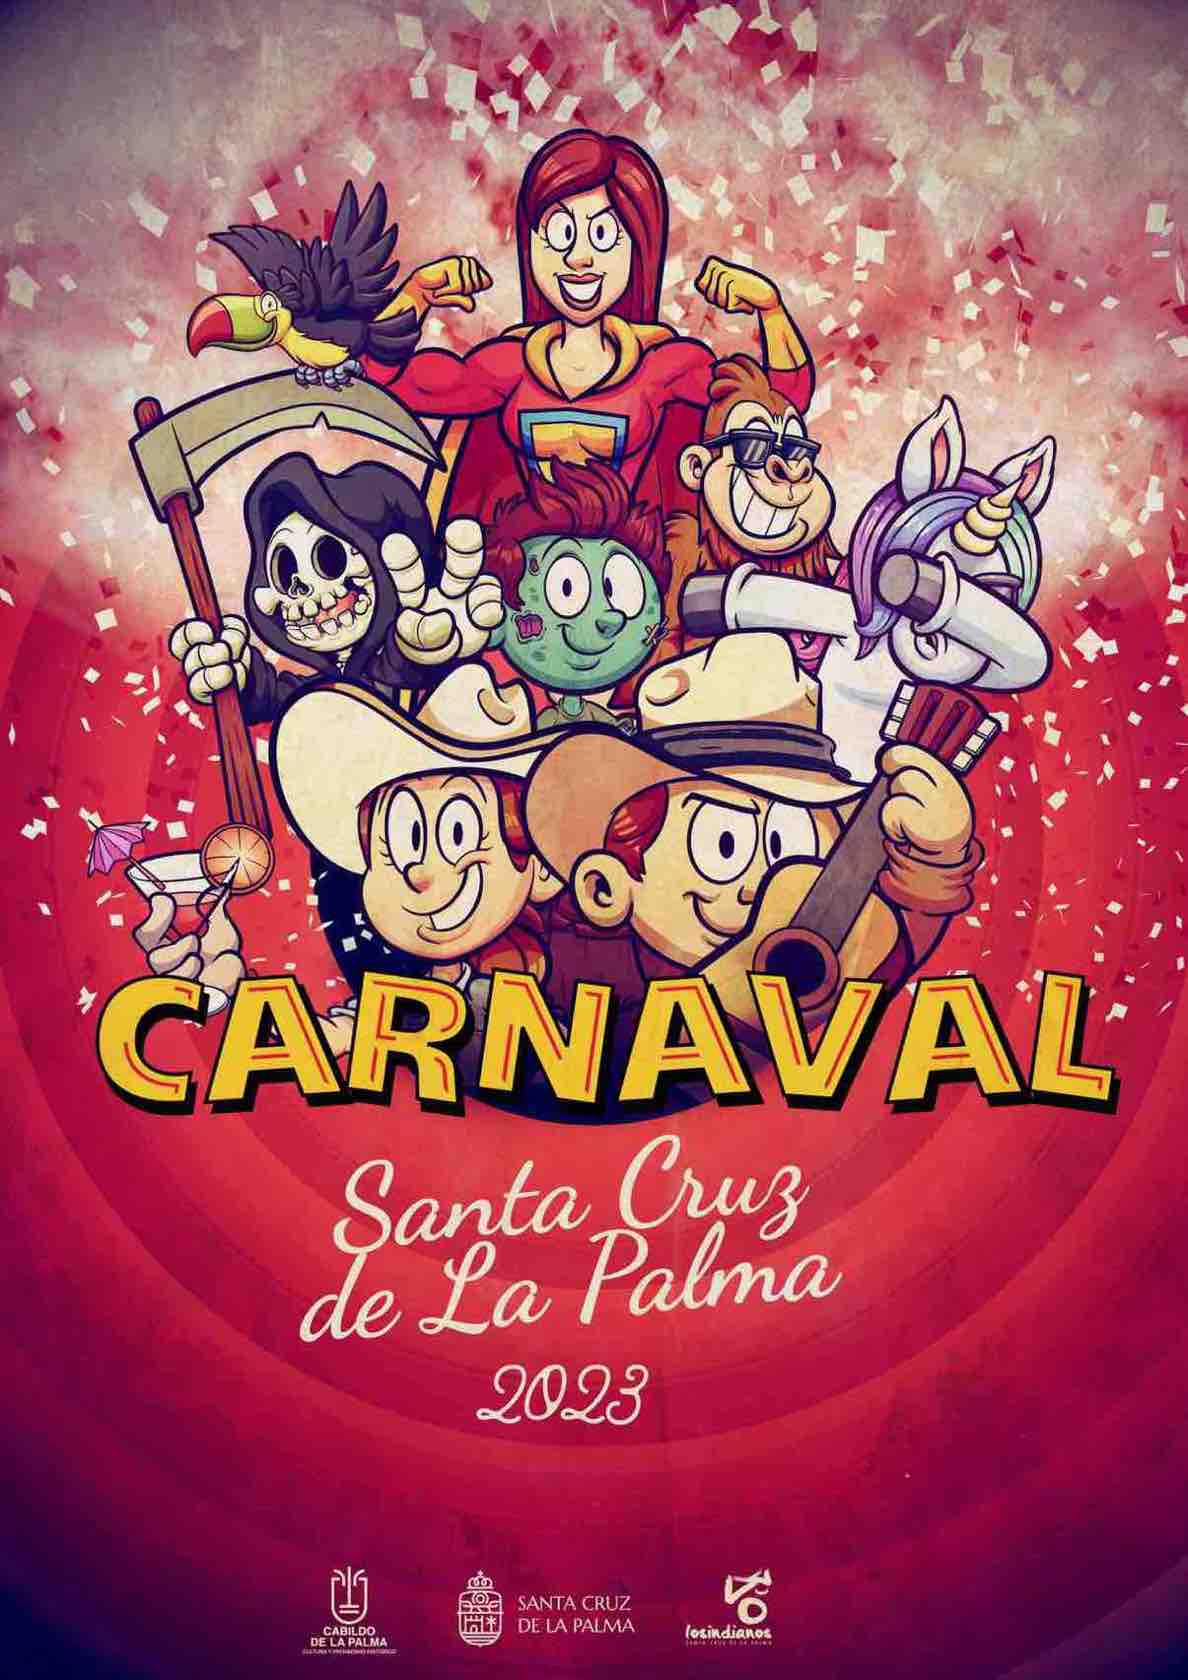 La concejalía de Fiestas organiza un concurso de disfraces para el fin de semana de piñata de Santa Cruz de La Palma